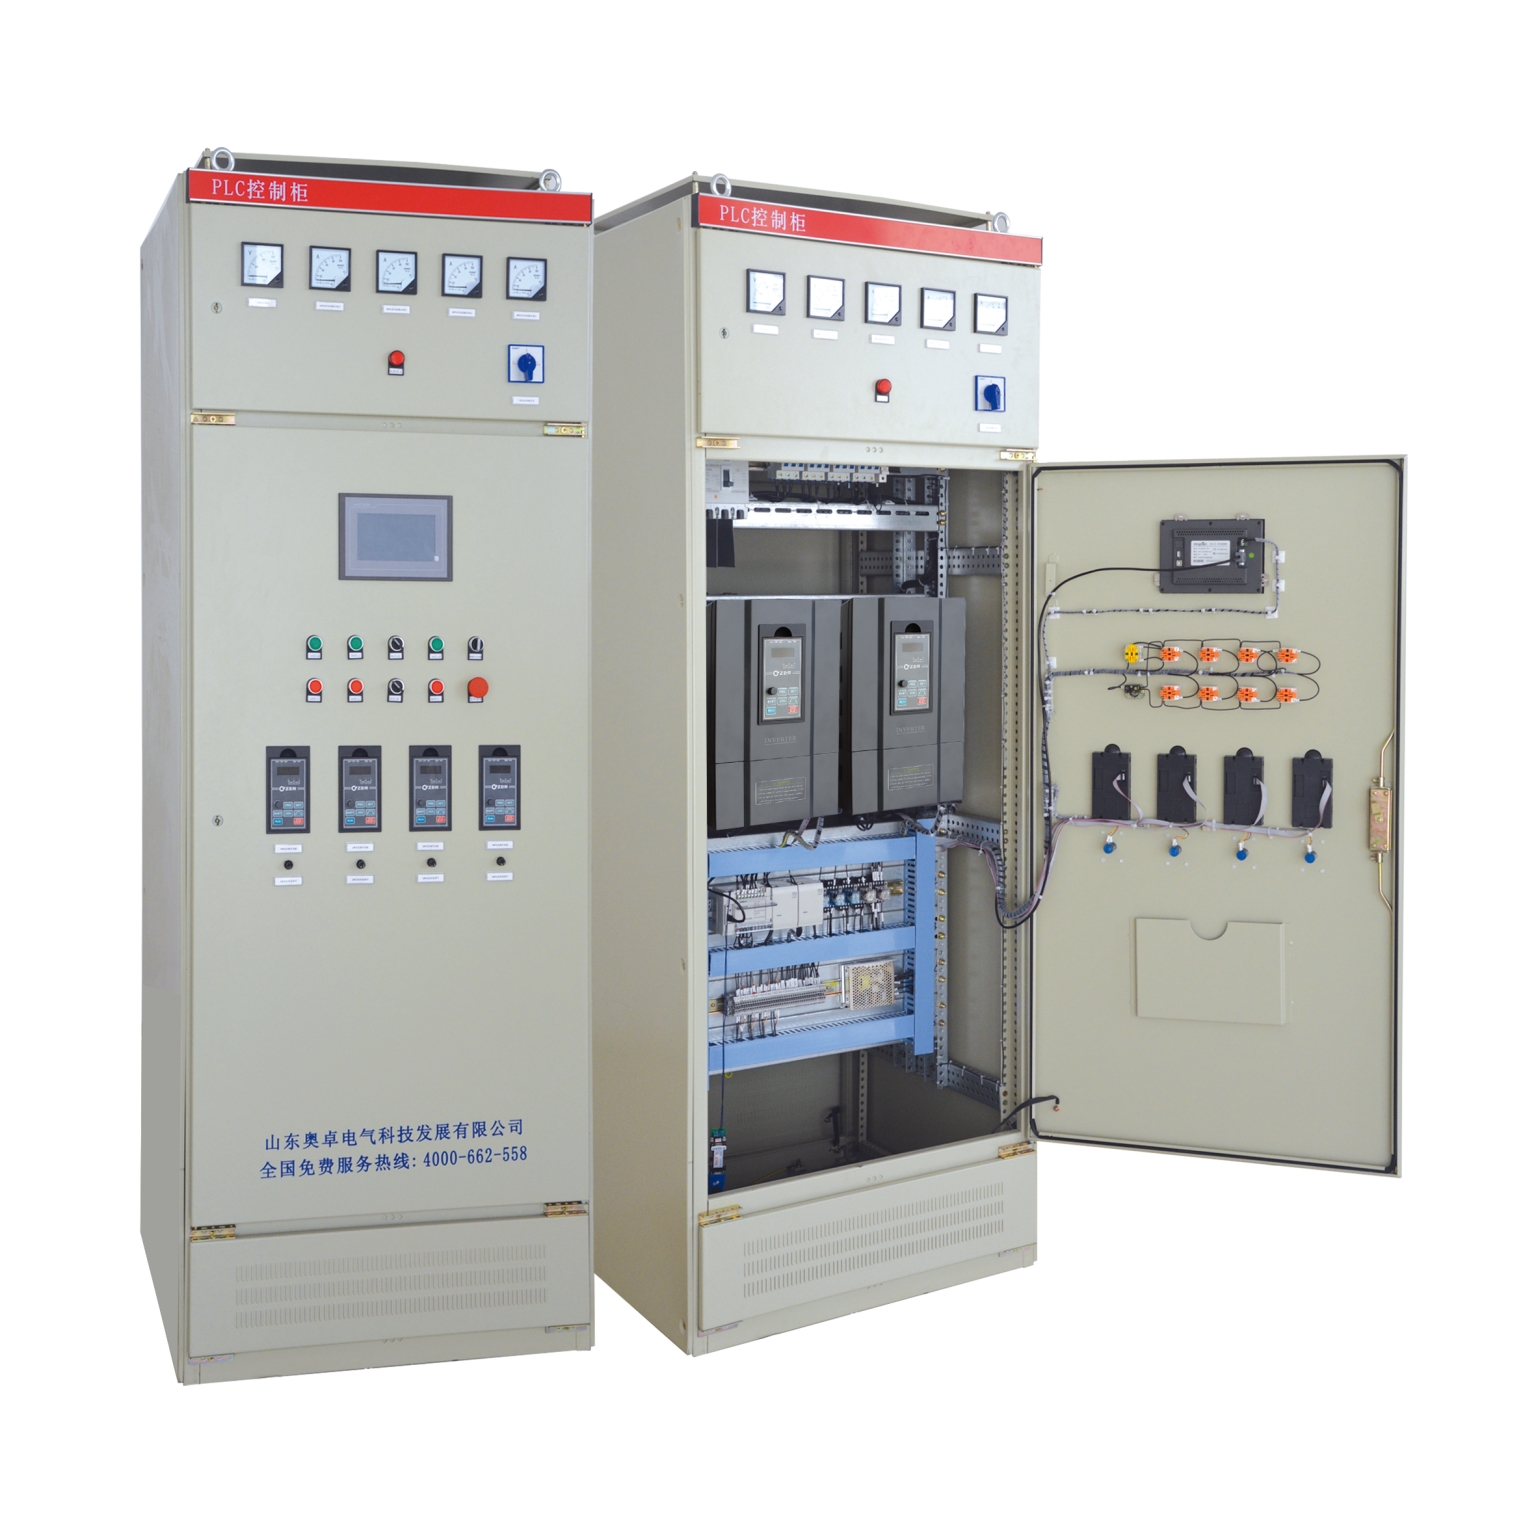 山东 PLC控制柜 PLC变频控制柜 变频柜 电气控制柜电气自动化控制系统图片